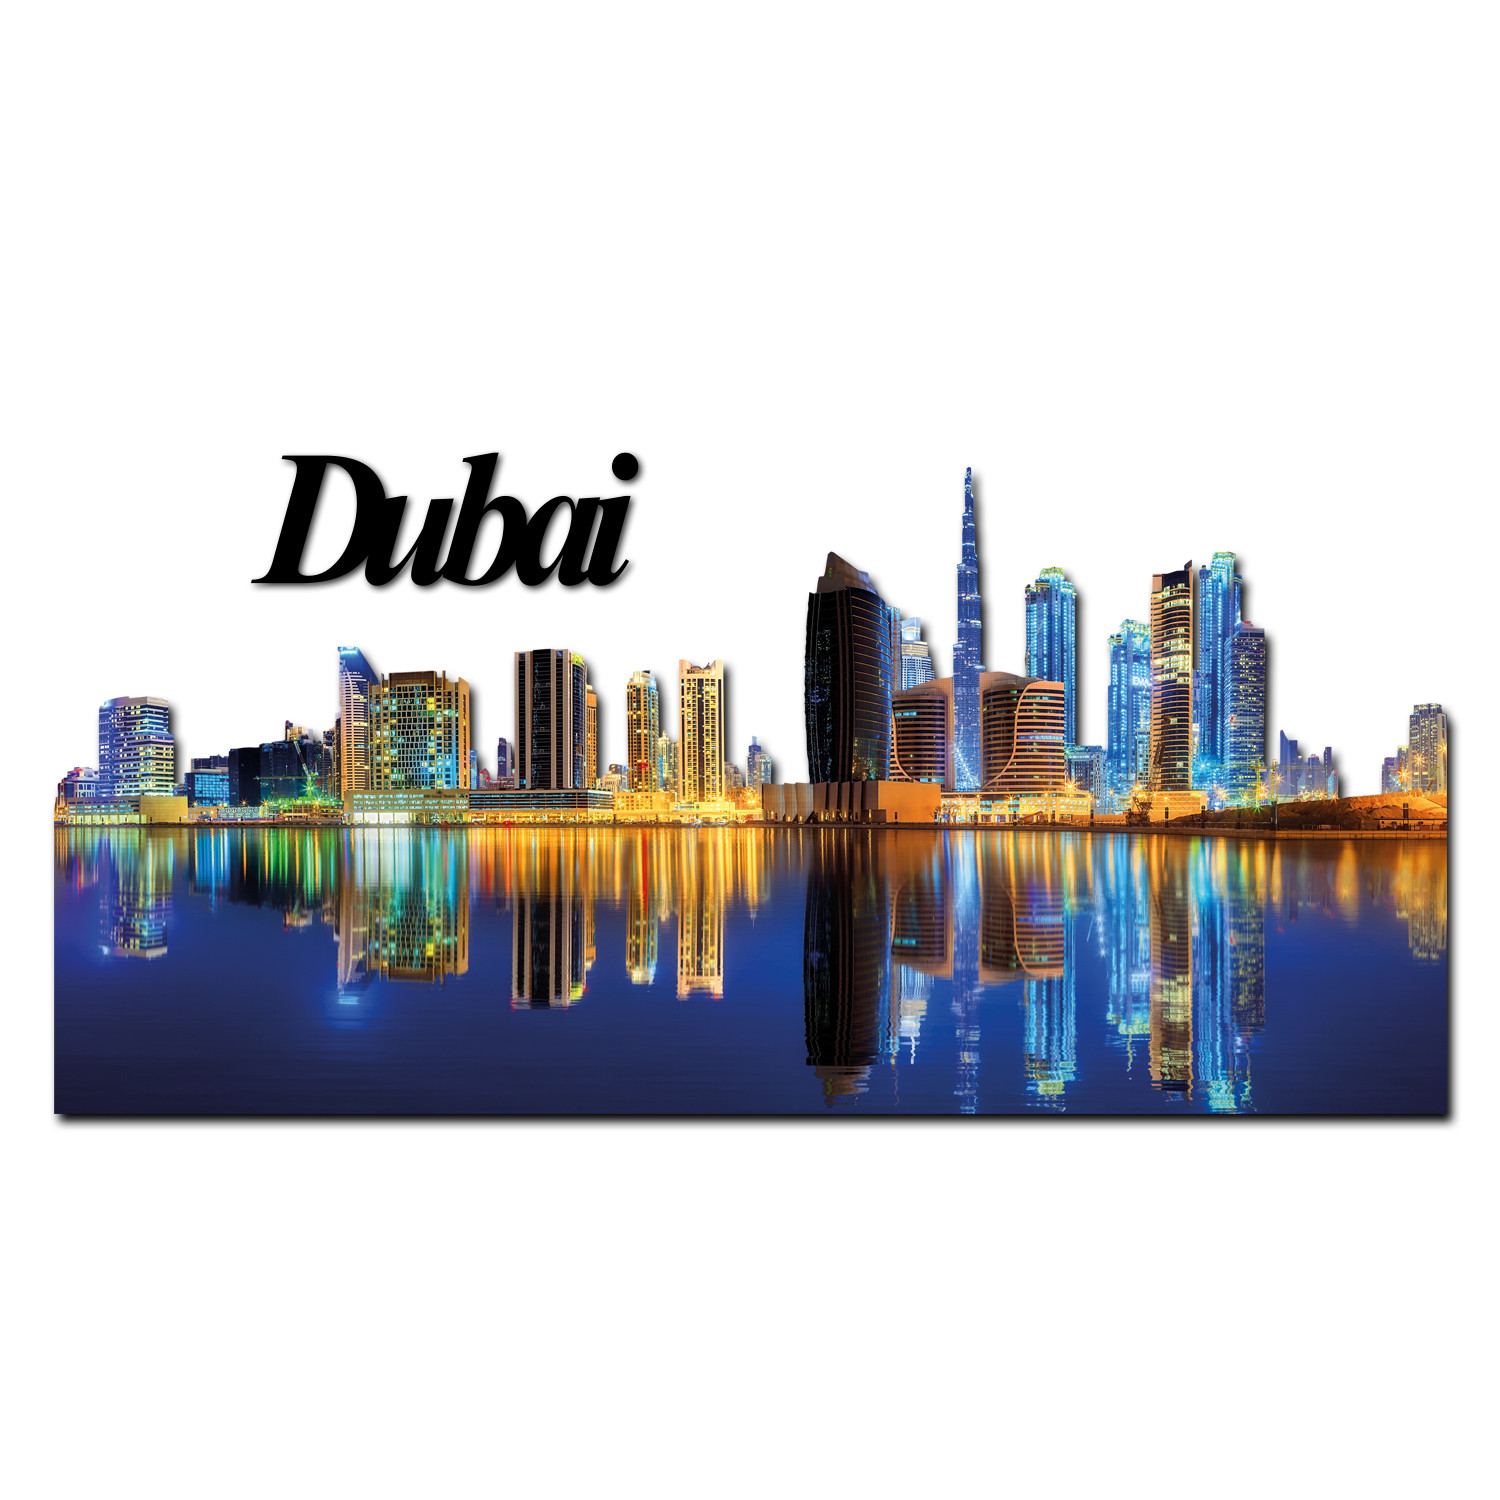 Dubai 02